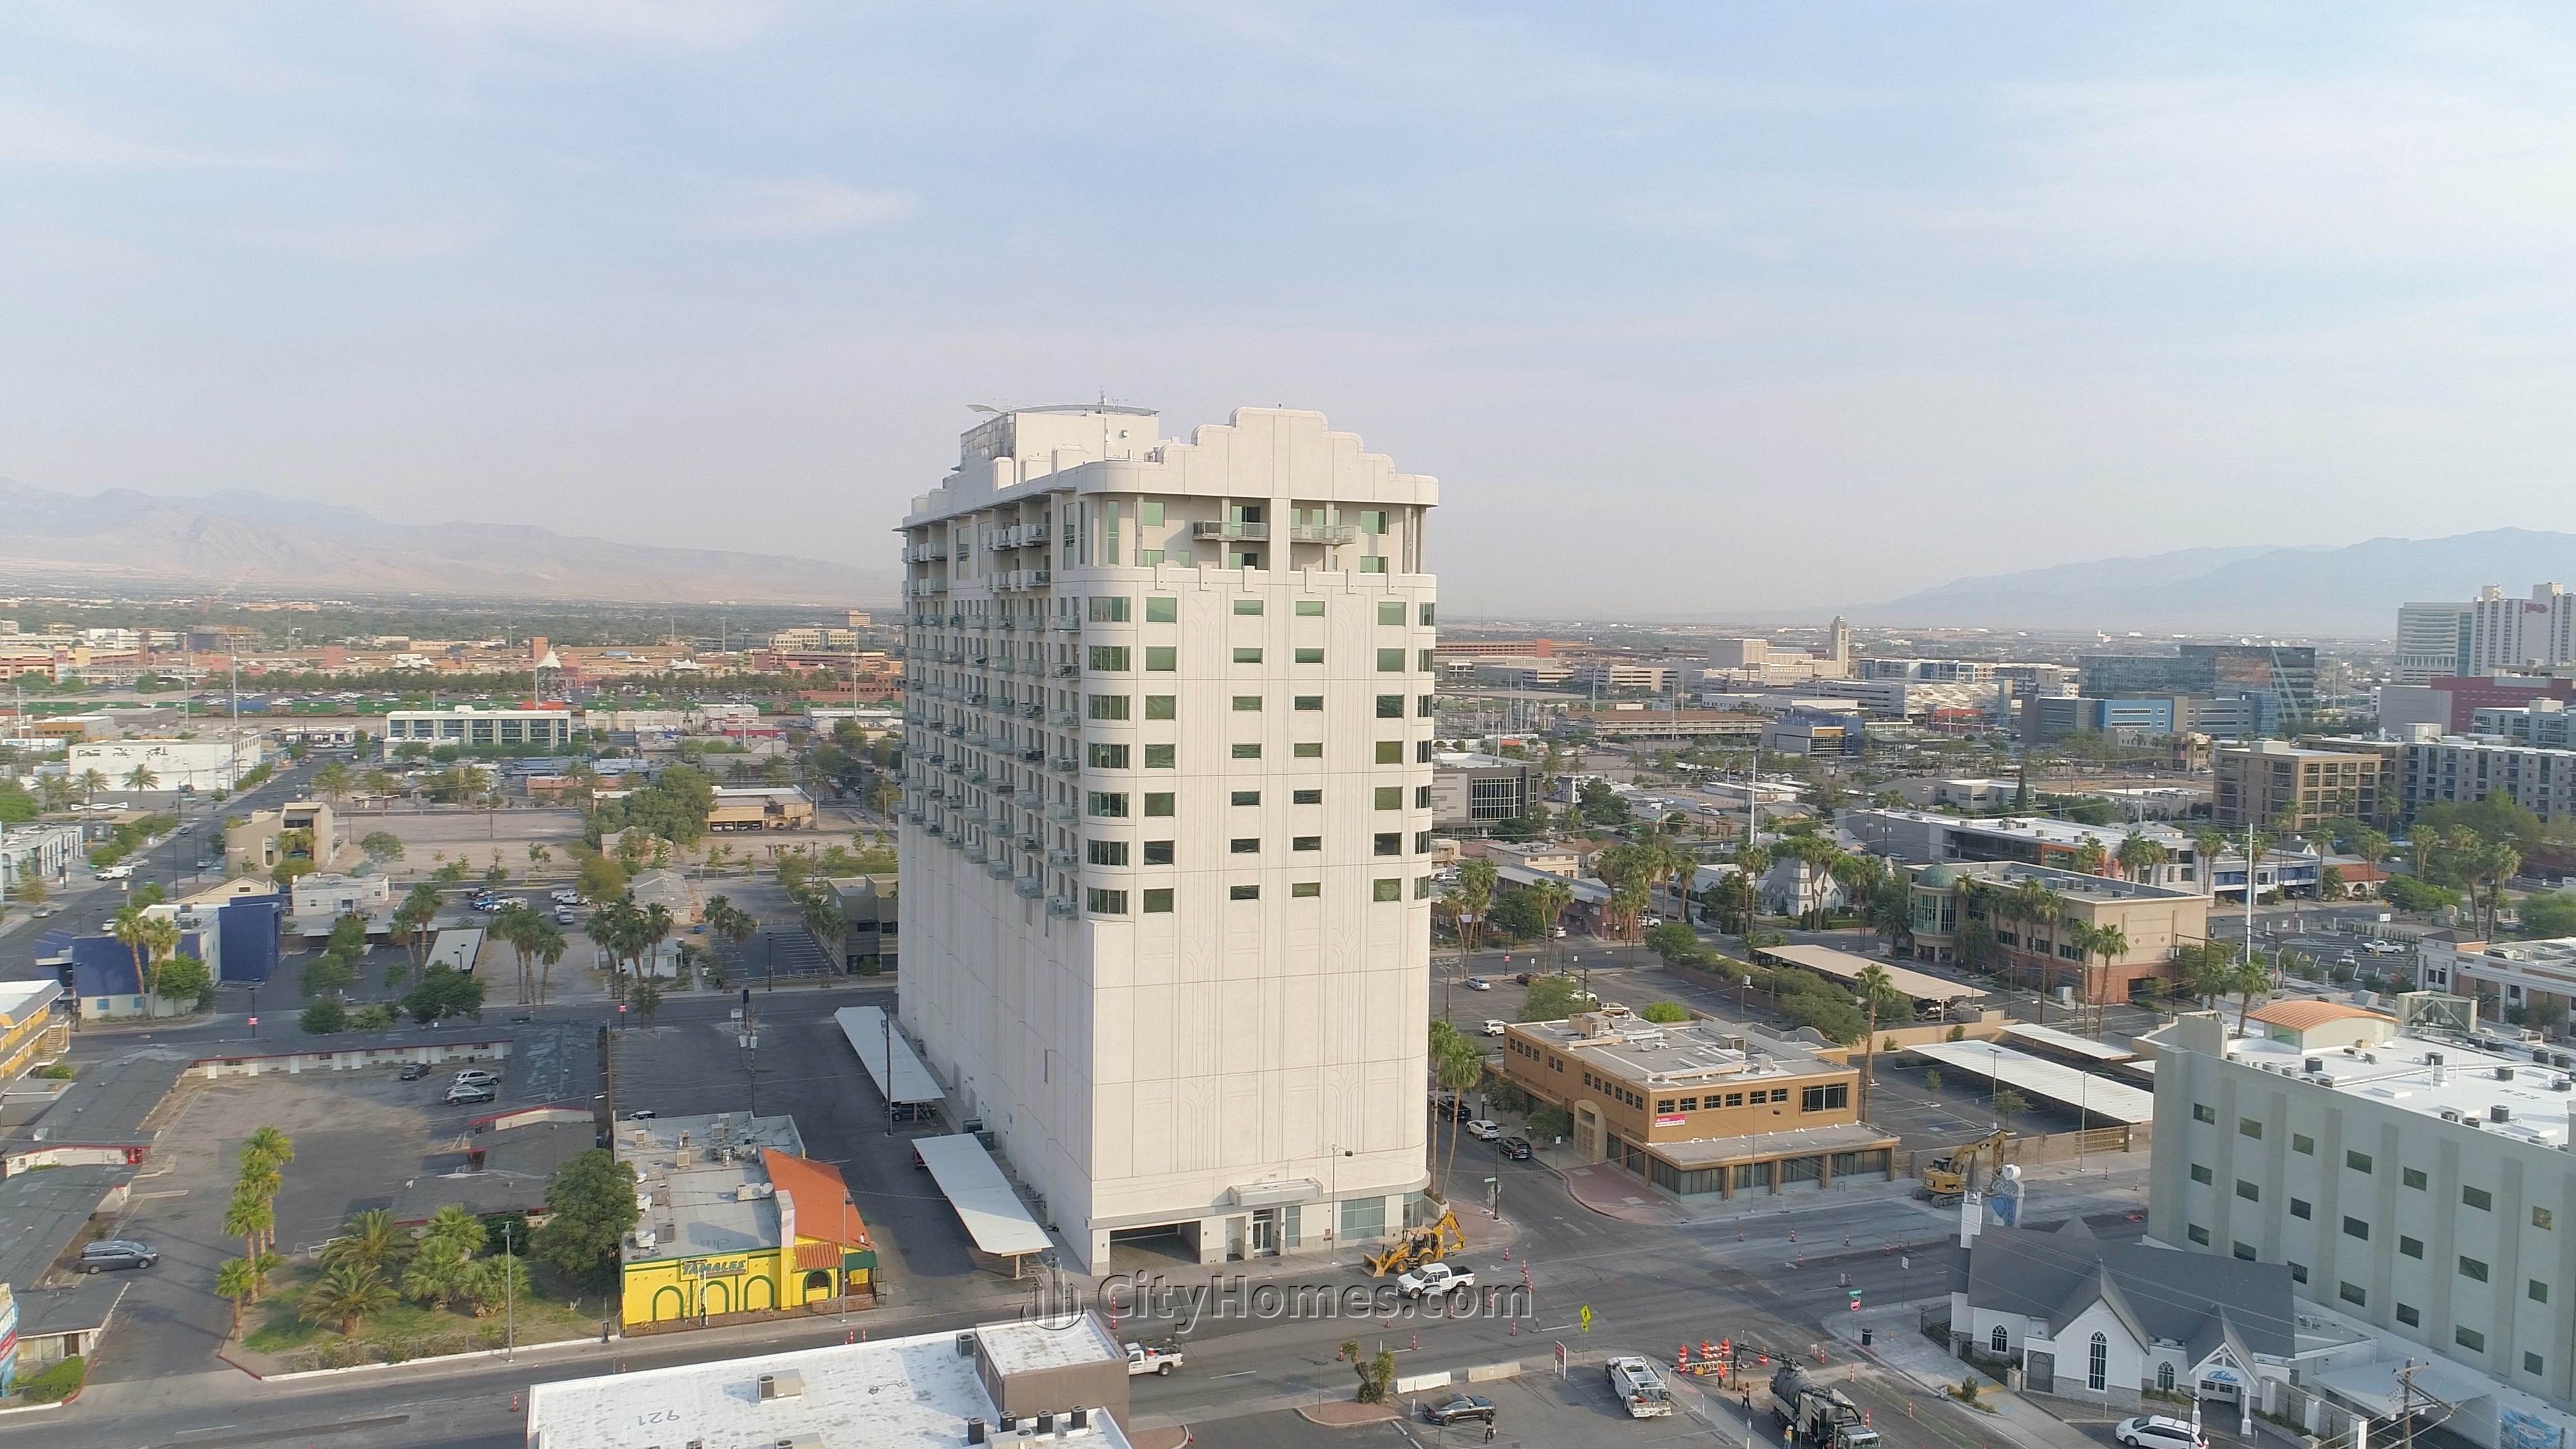 2. Soho Lofts xây dựng tại 900 S Las Vegas Blvd, Las Vegas, NV 89101